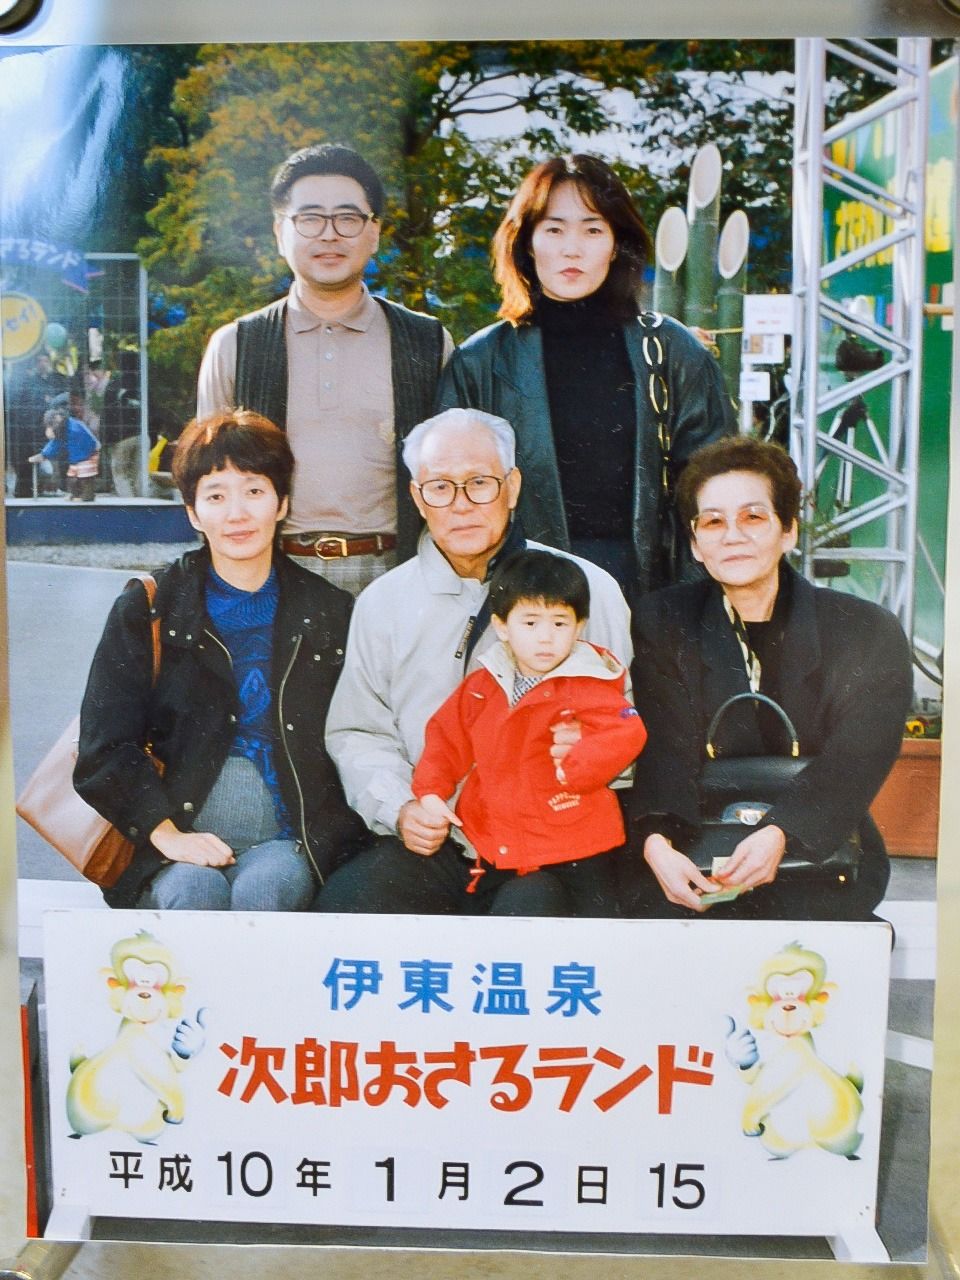 نشأ توشيكي وهو يتلقى الكثير من الحب من عائلته وأقاربه (تقديم السيدة إشي)